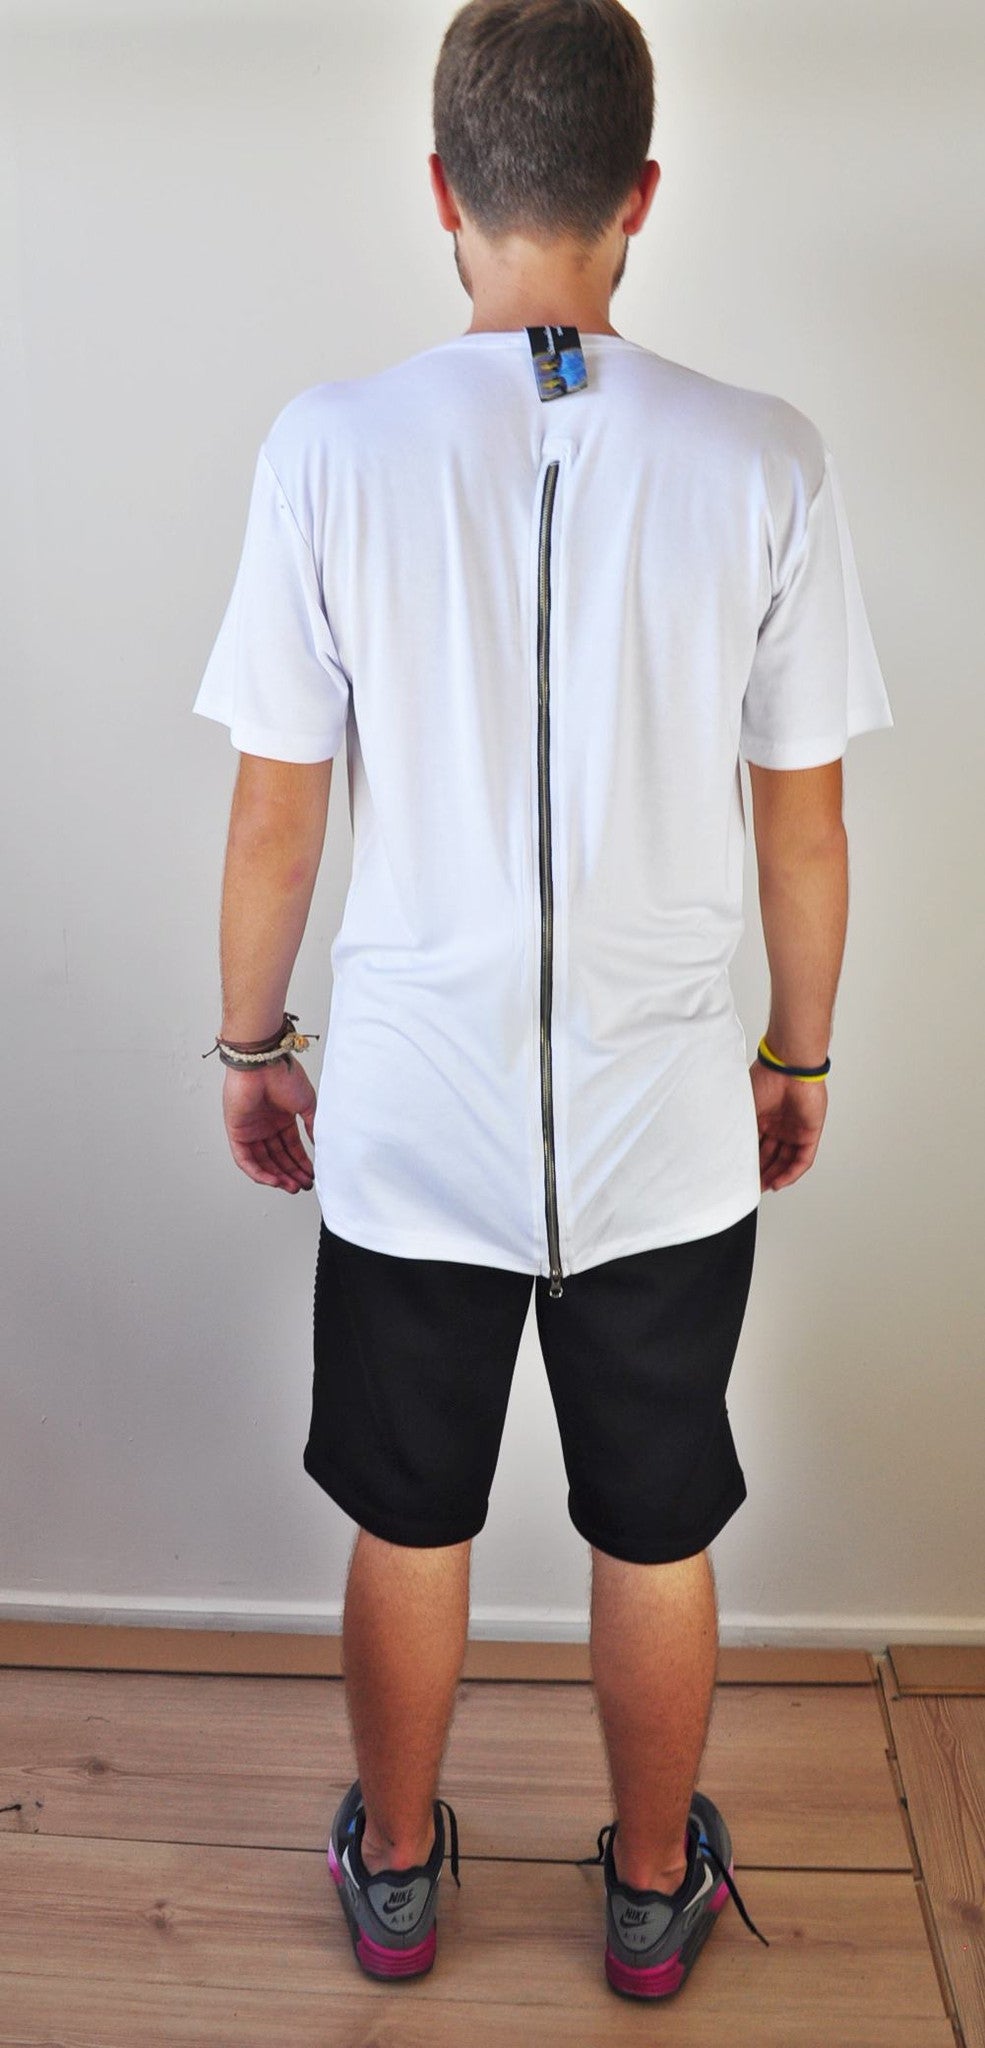 Mens Lengthen Extended Back Full Zipper Design Short Sleeve Tops Tshirt